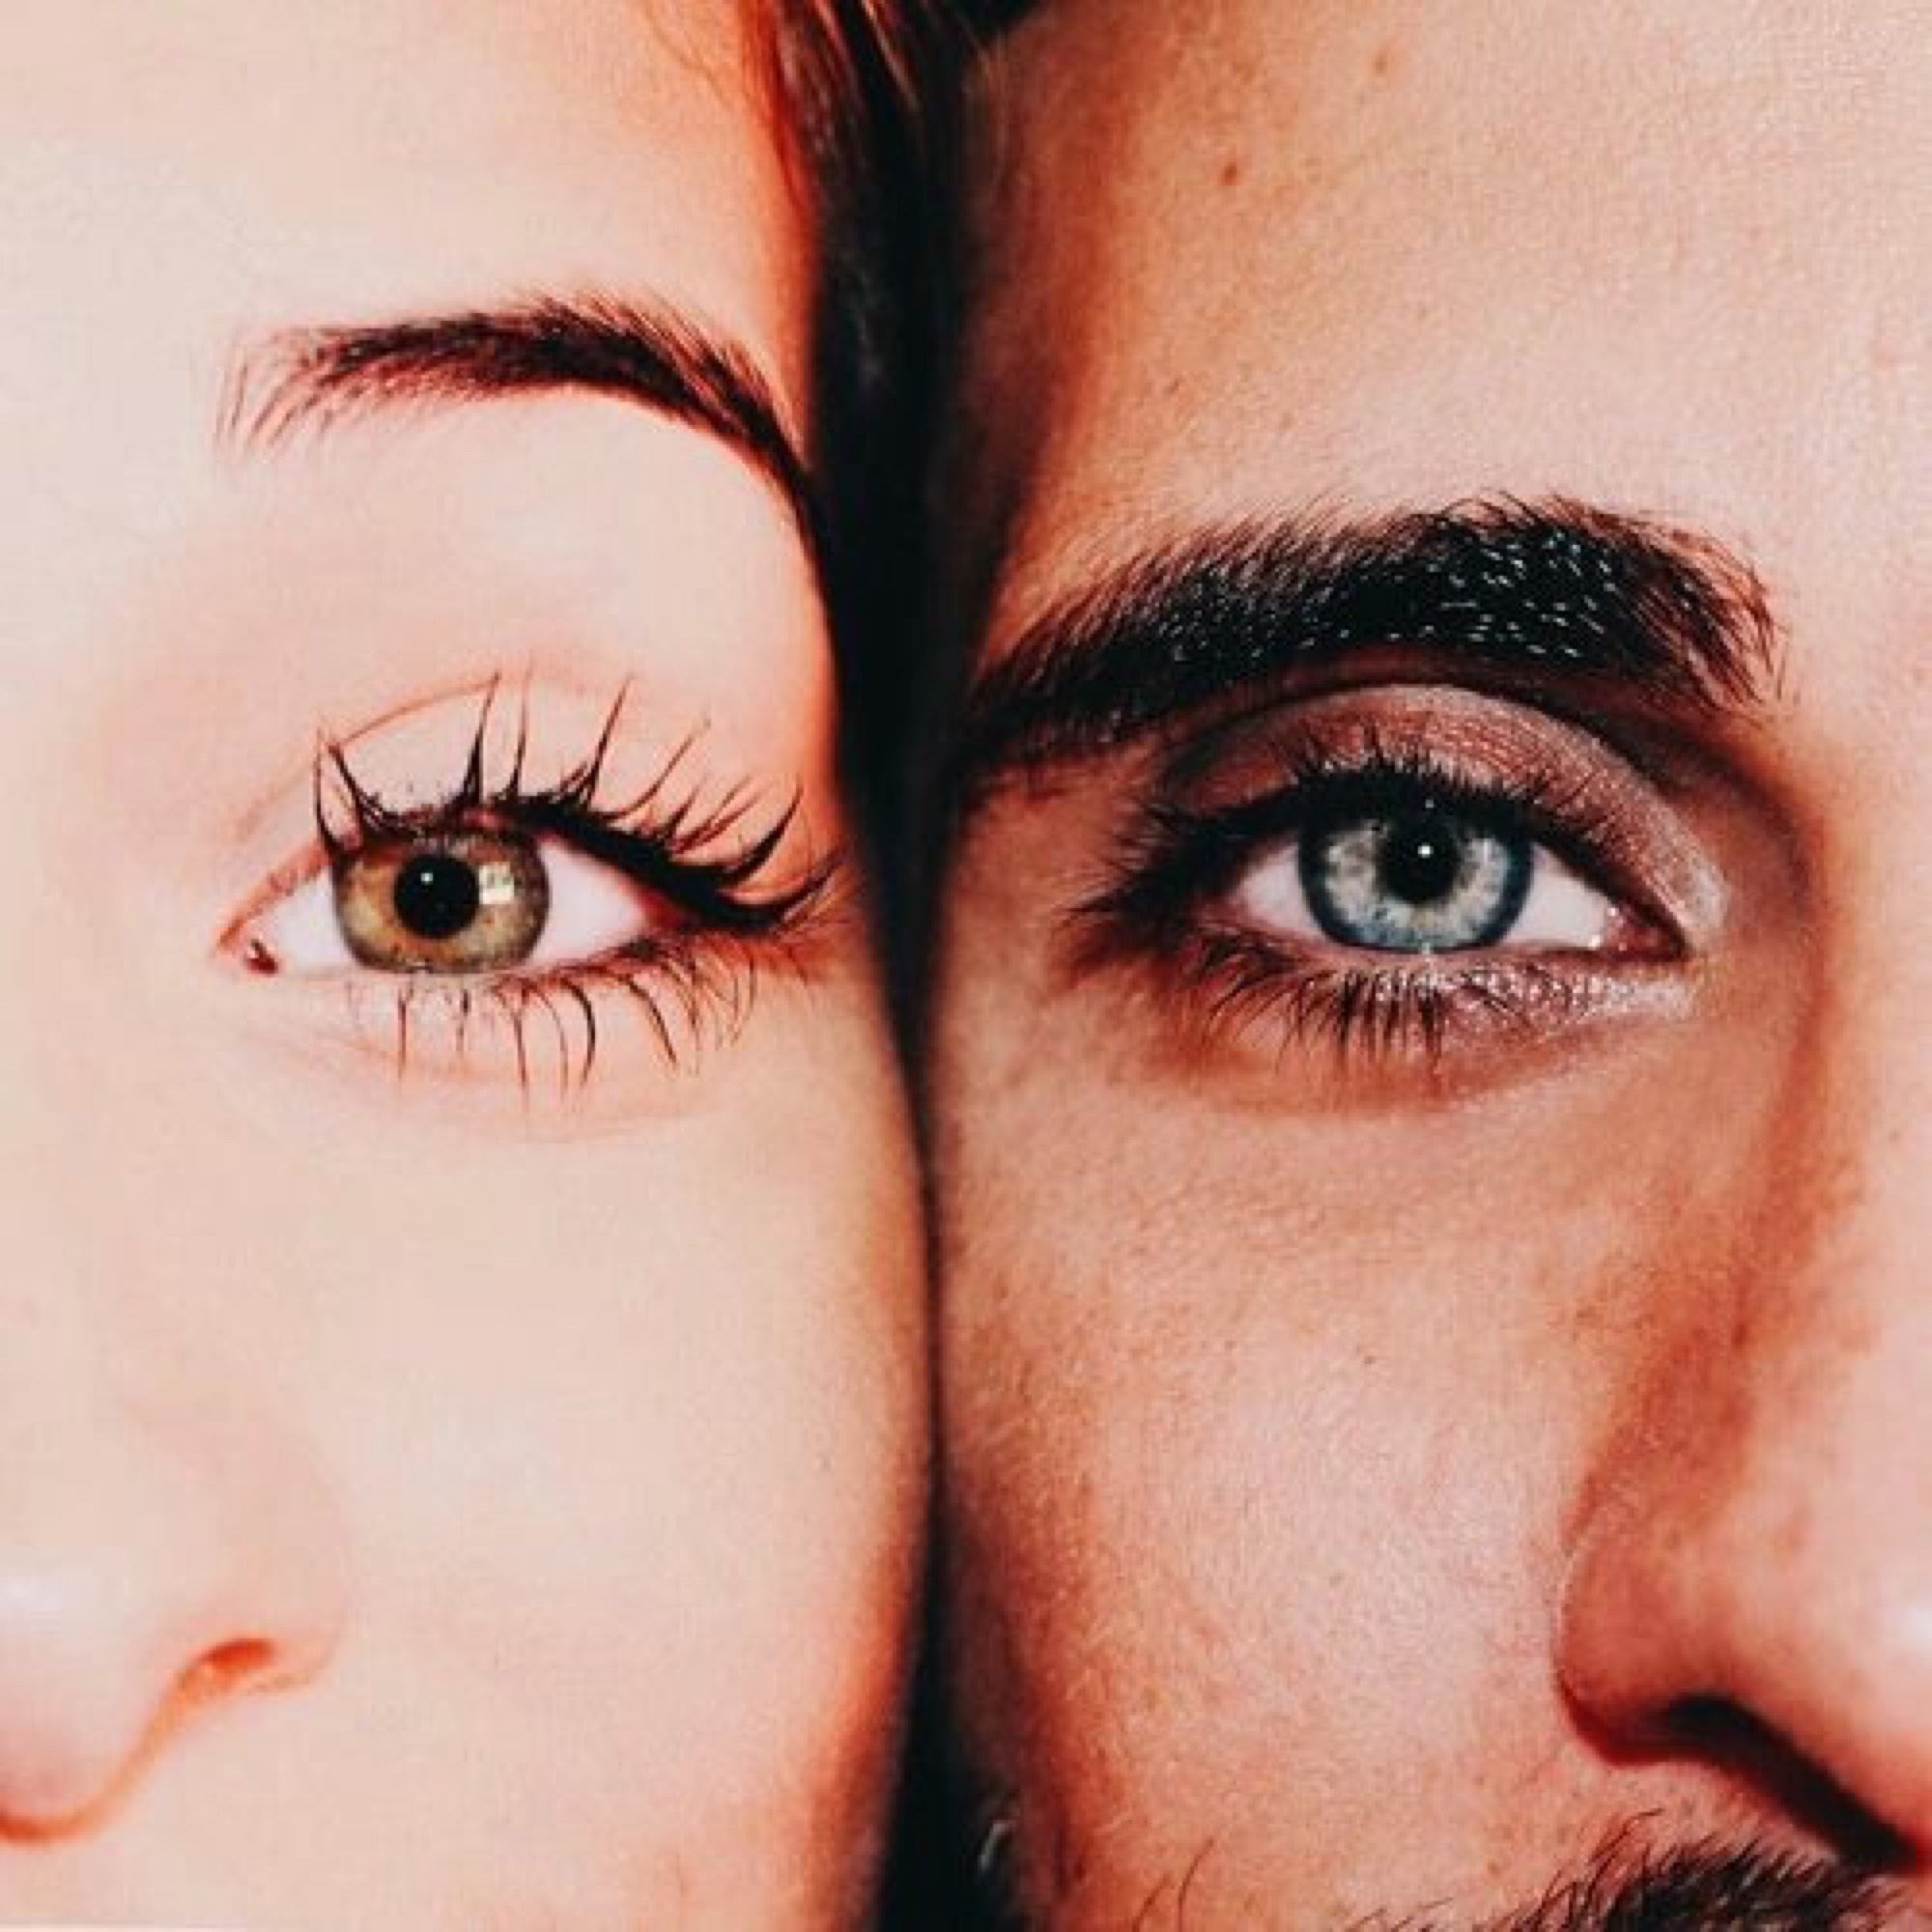 Двух или нескольких лиц. Мужские и женские глаза. Глаза влюбленного человека. Глаза парня и девушки. Женщина глазами мужчины.